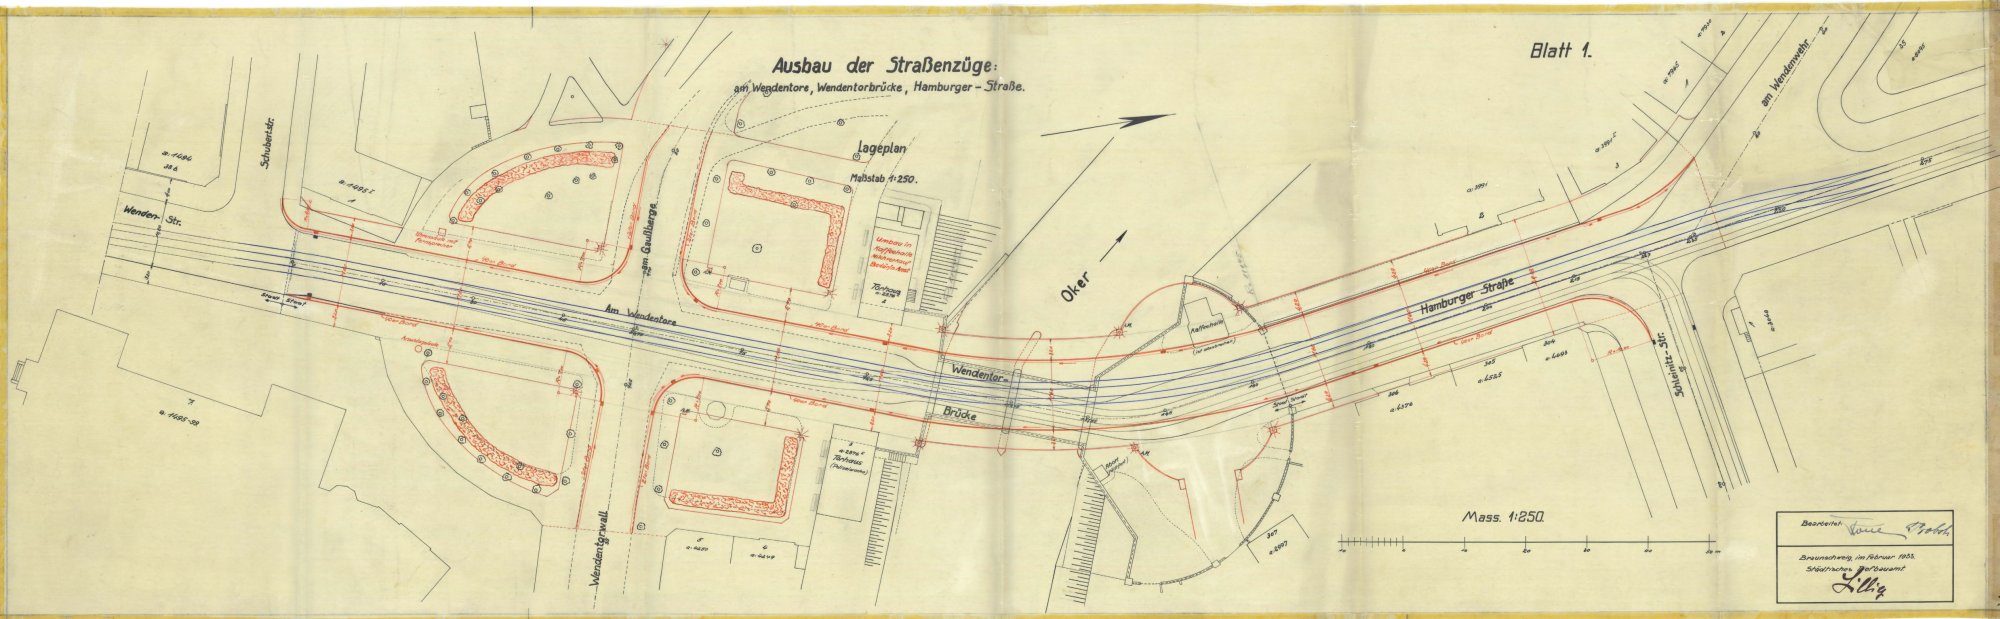 Wendentorbrücke, Lageplan, Ausschnitt, 1933 (Wird bei Klick vergrößert)